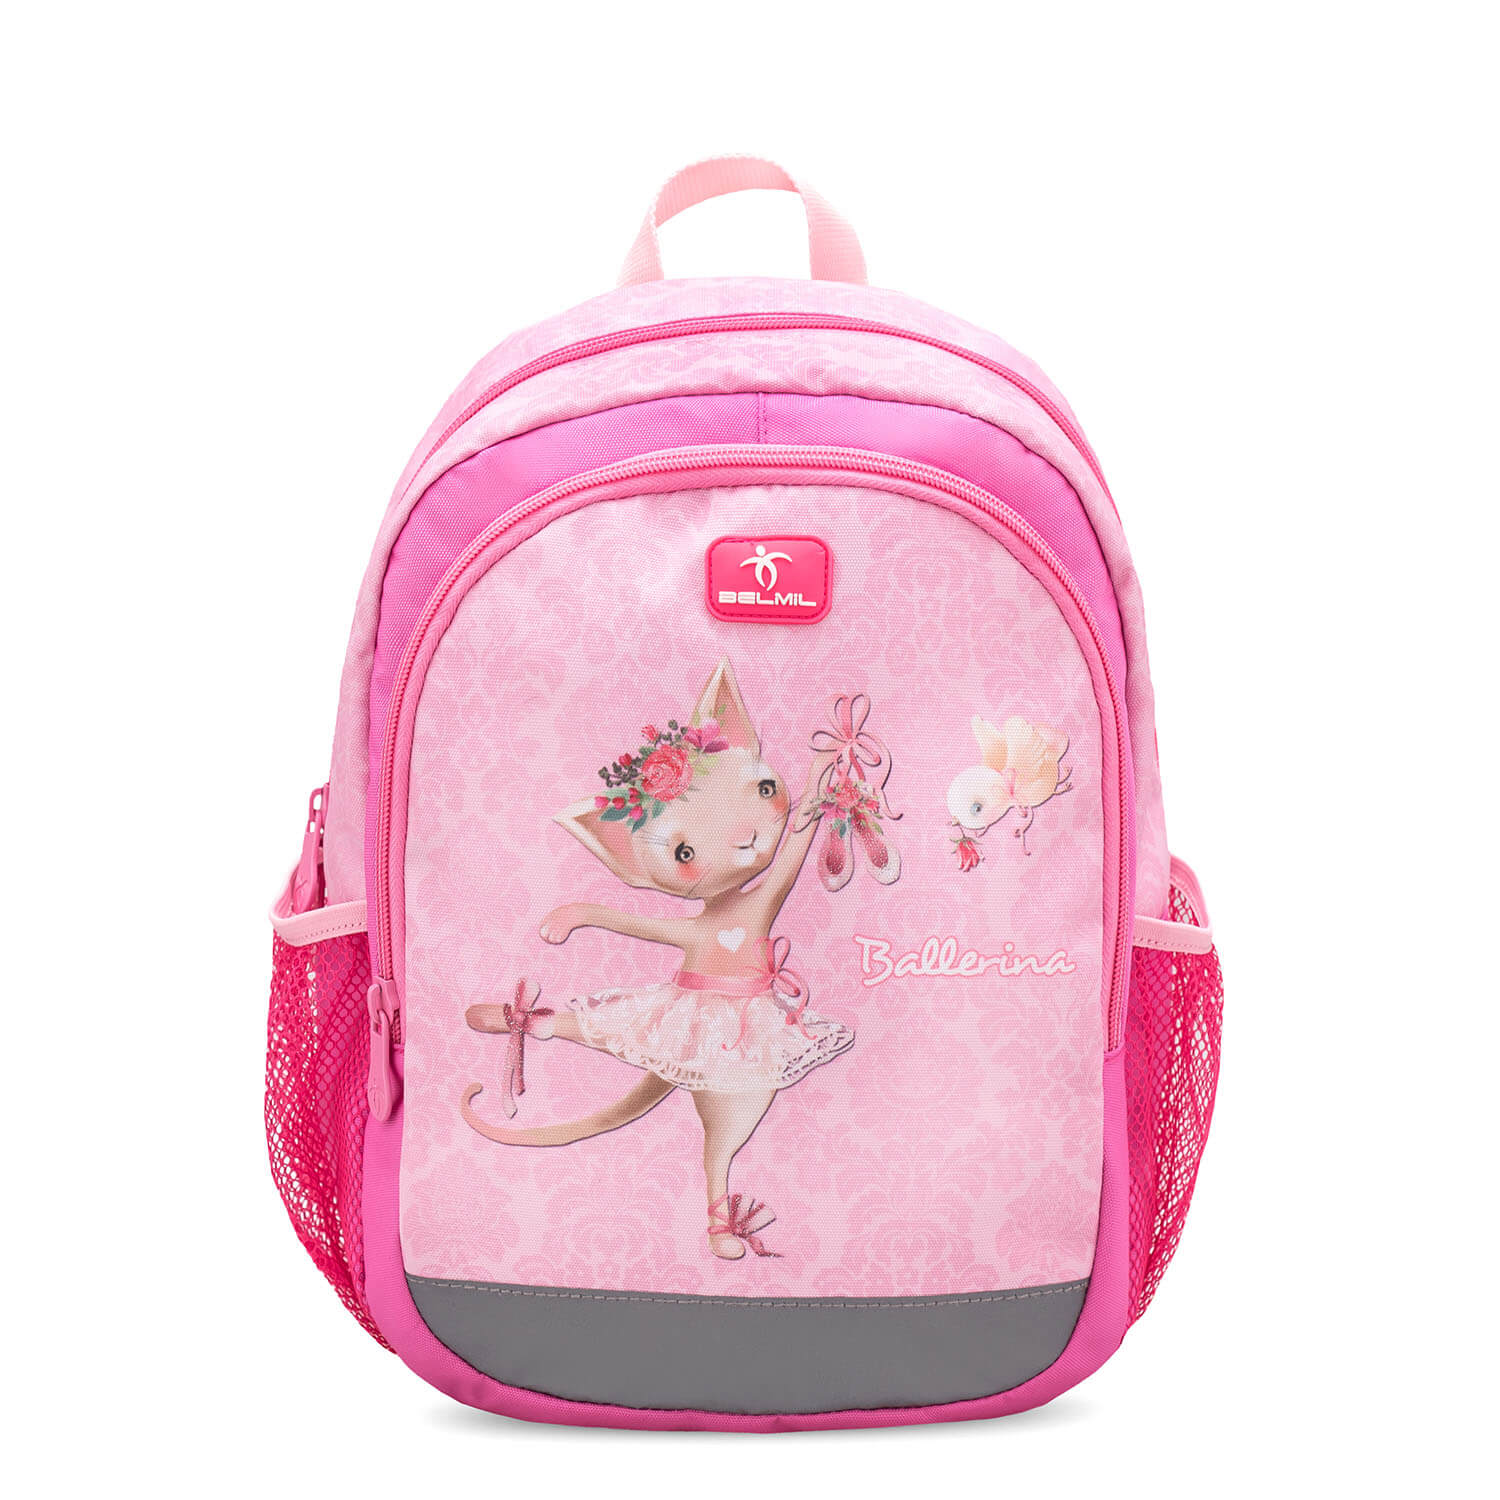 Kiddy Plus Ballerina Kindergarten Bag mit GRATIS Storage box